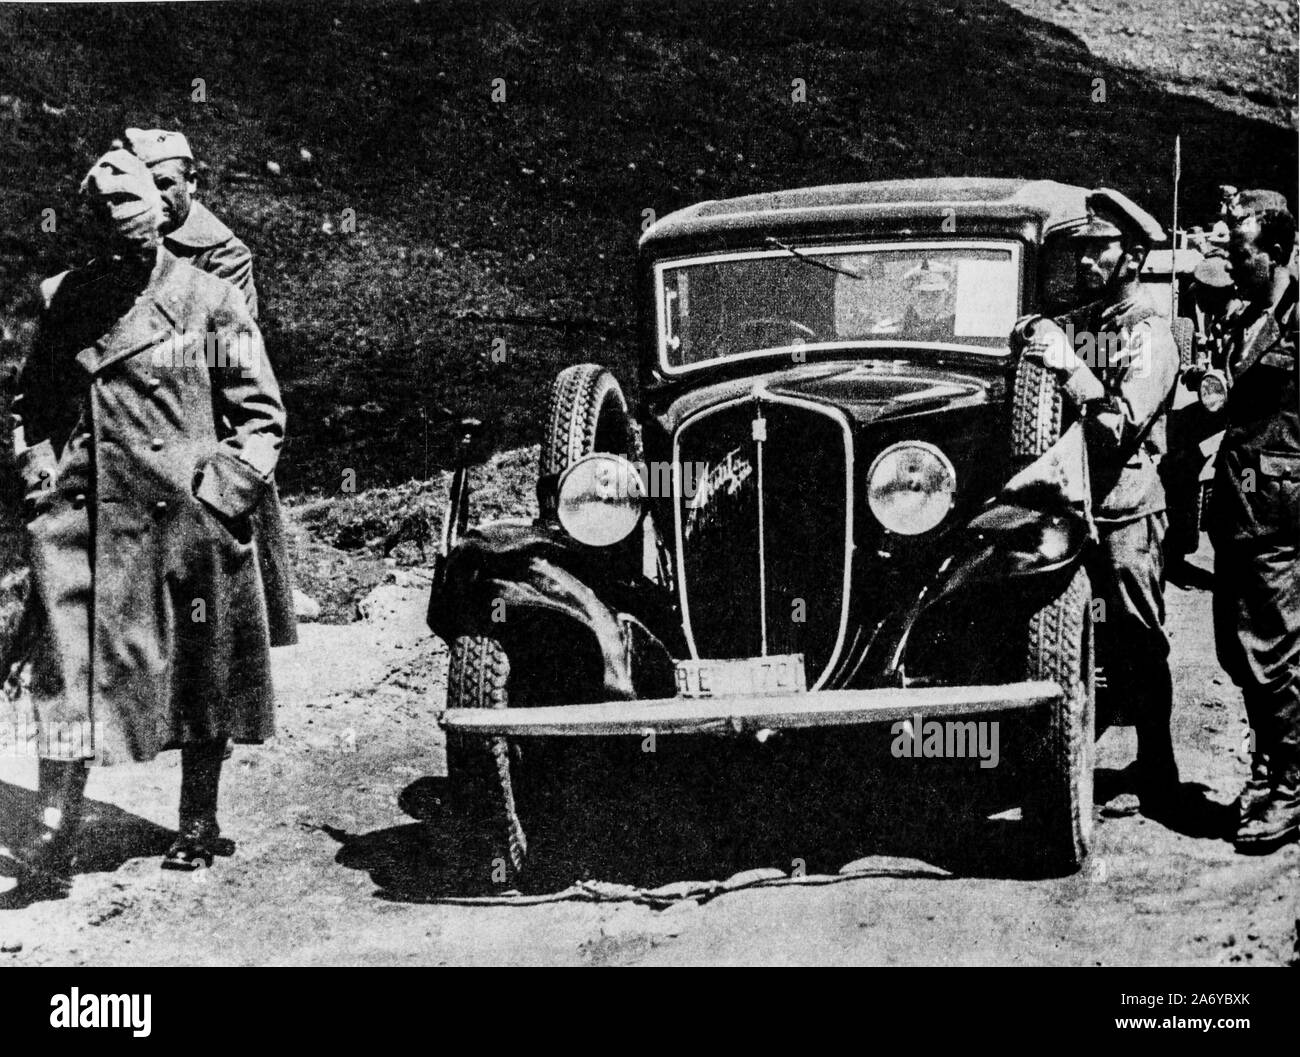 Le maréchal Pietro Badoglio le long de la route d'Addis Abeba, la guerre d'Éthiopie, 1936 Banque D'Images